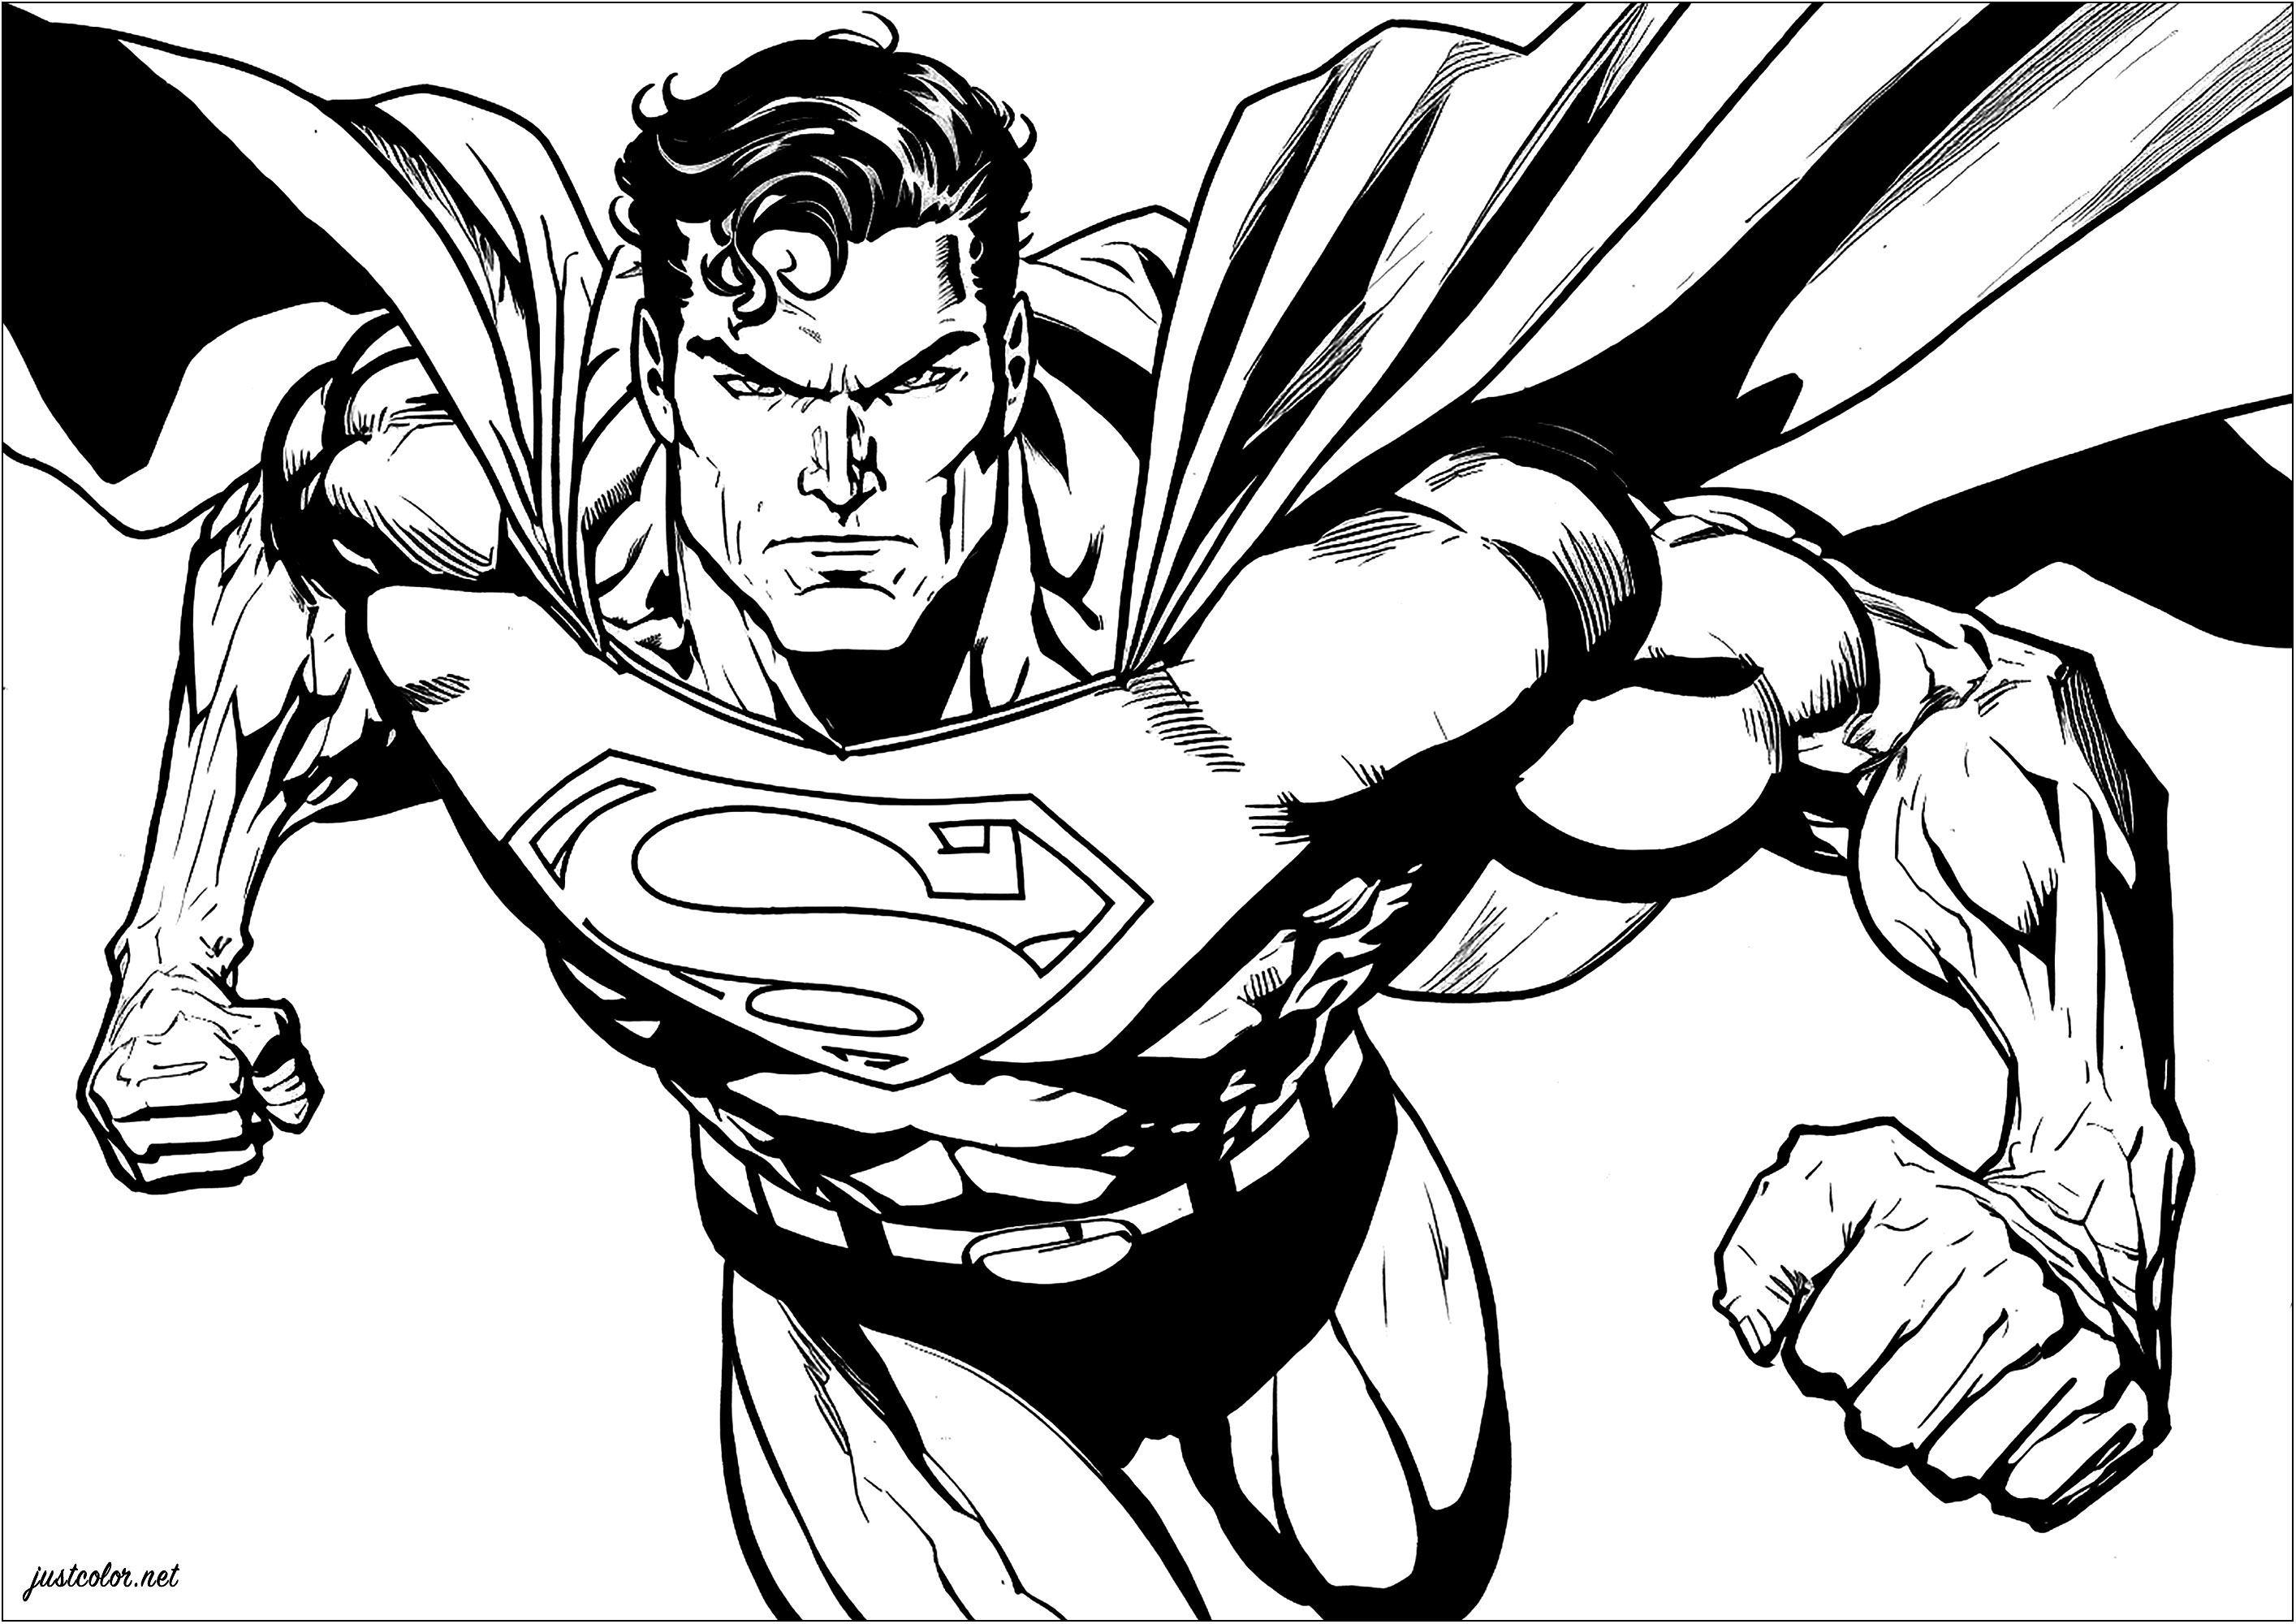 Superman und seine strammen Muskeln, bereit zum Kampf. Halten Sie Ihre blauen, roten und gelben Marker bereit!